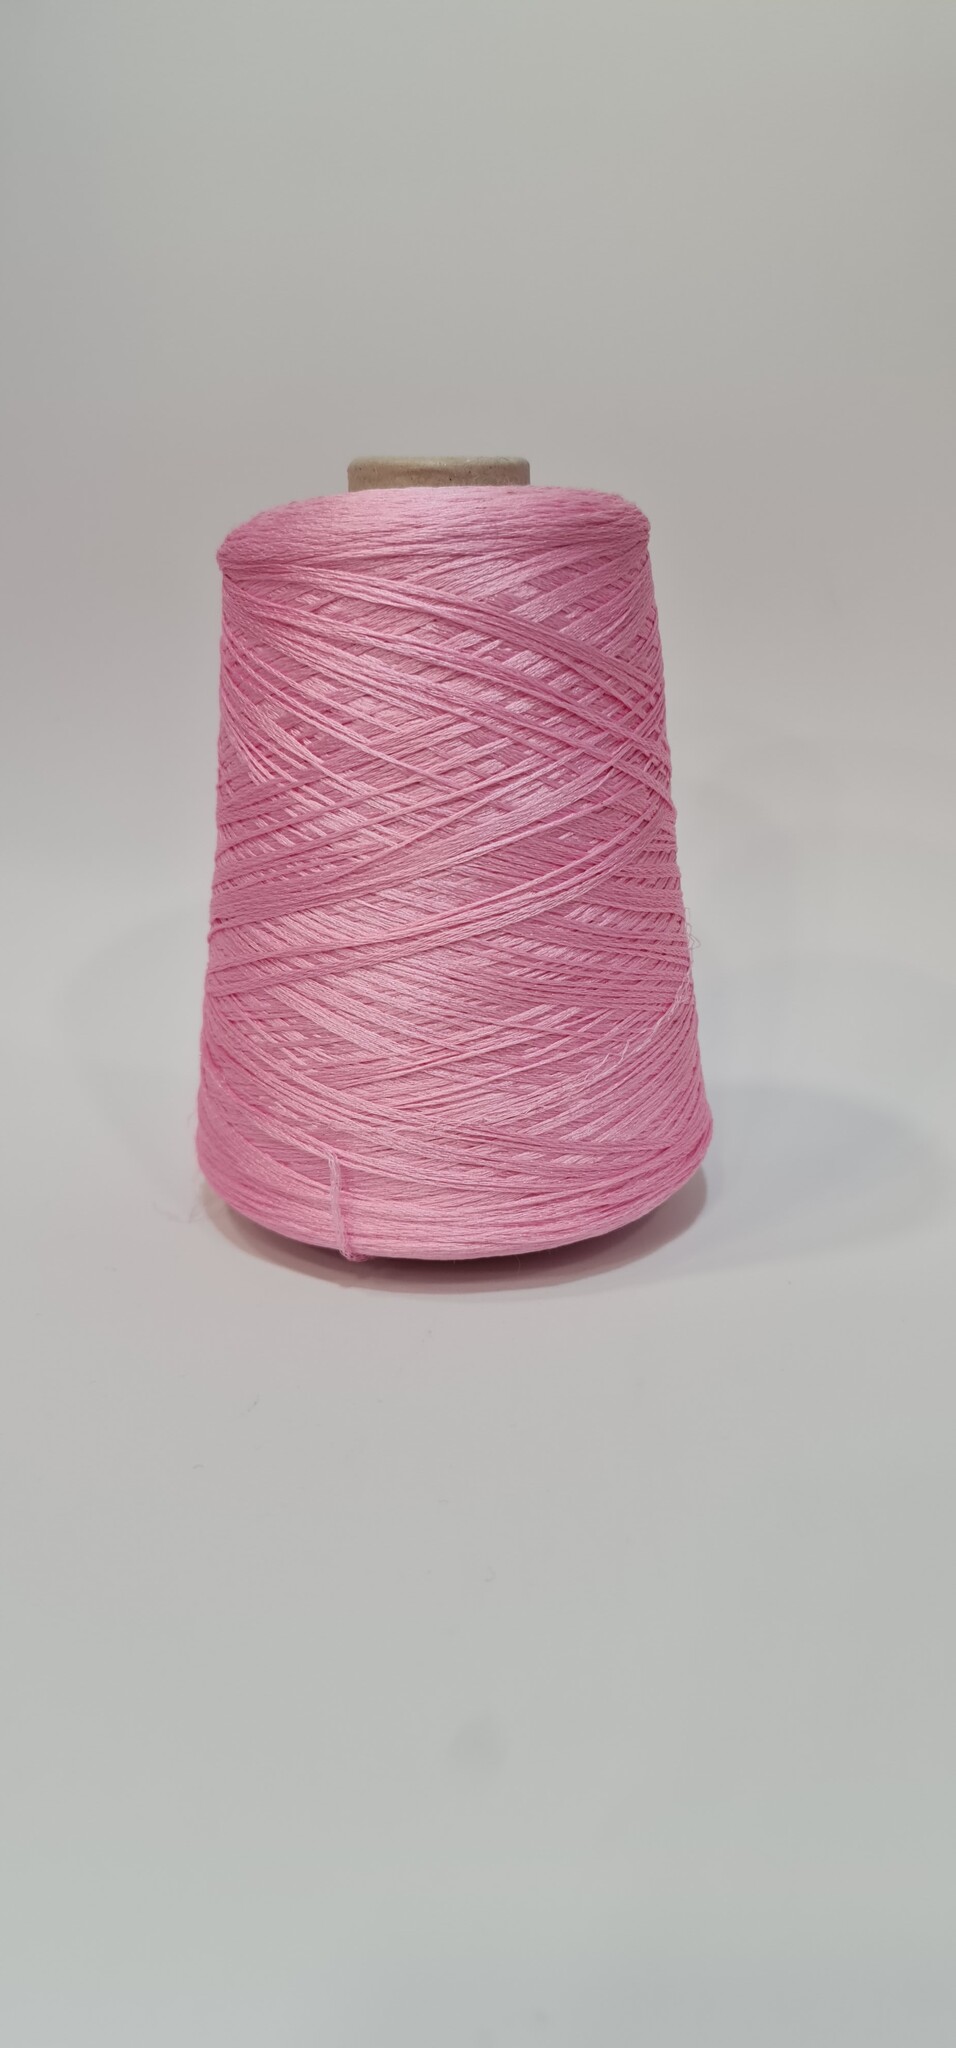 Шелк малберри в шнурке от Loro Piana (Розово-конфетный)